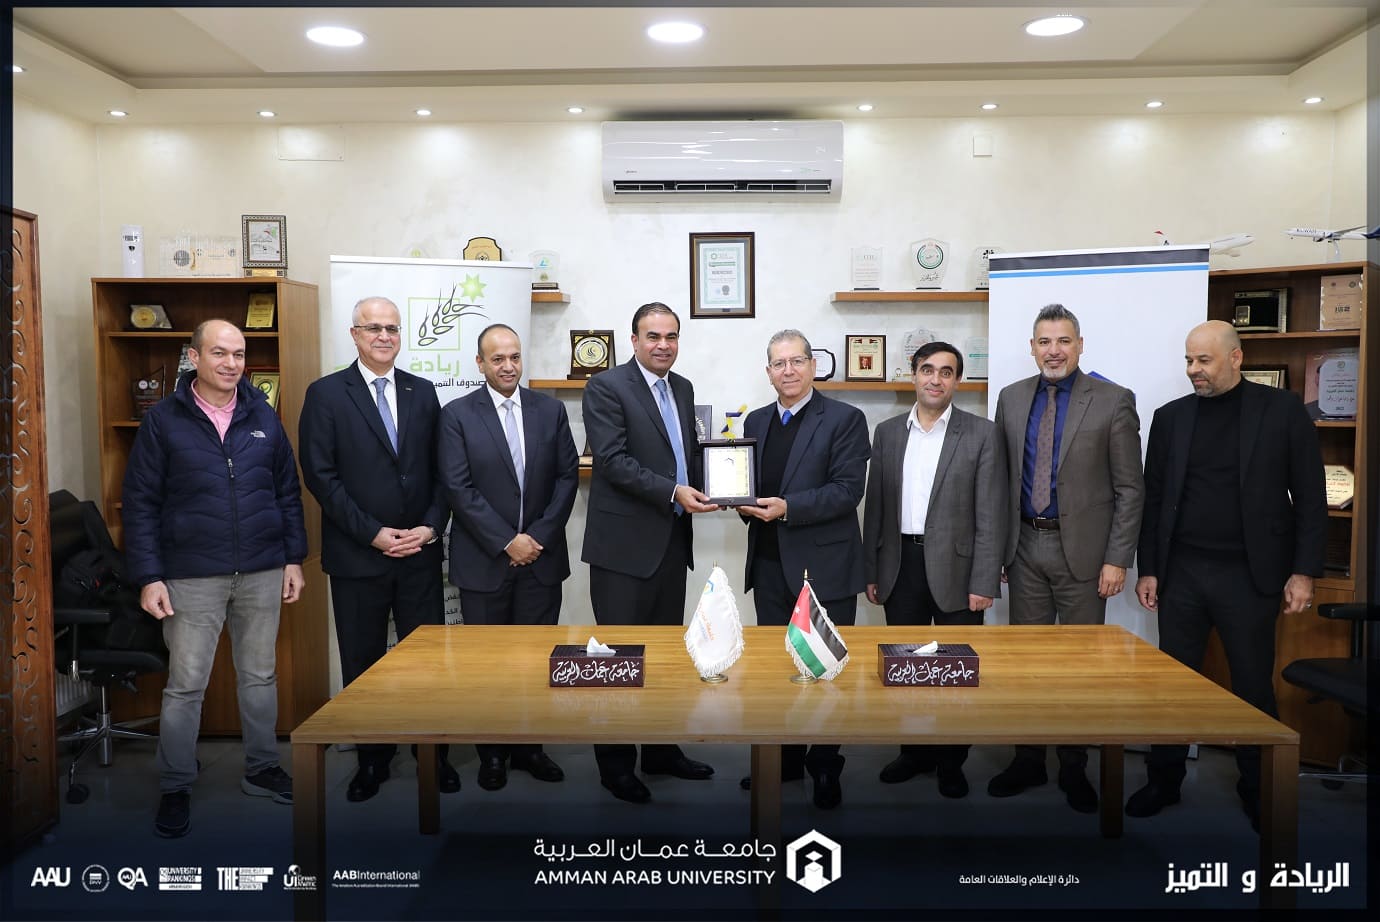 جامعة عمان العربية الأولى بين الجامعات الأردنية الرسمية والخاصة توقع مذكرة تعاون مع صندوق التنمية والتشغيل